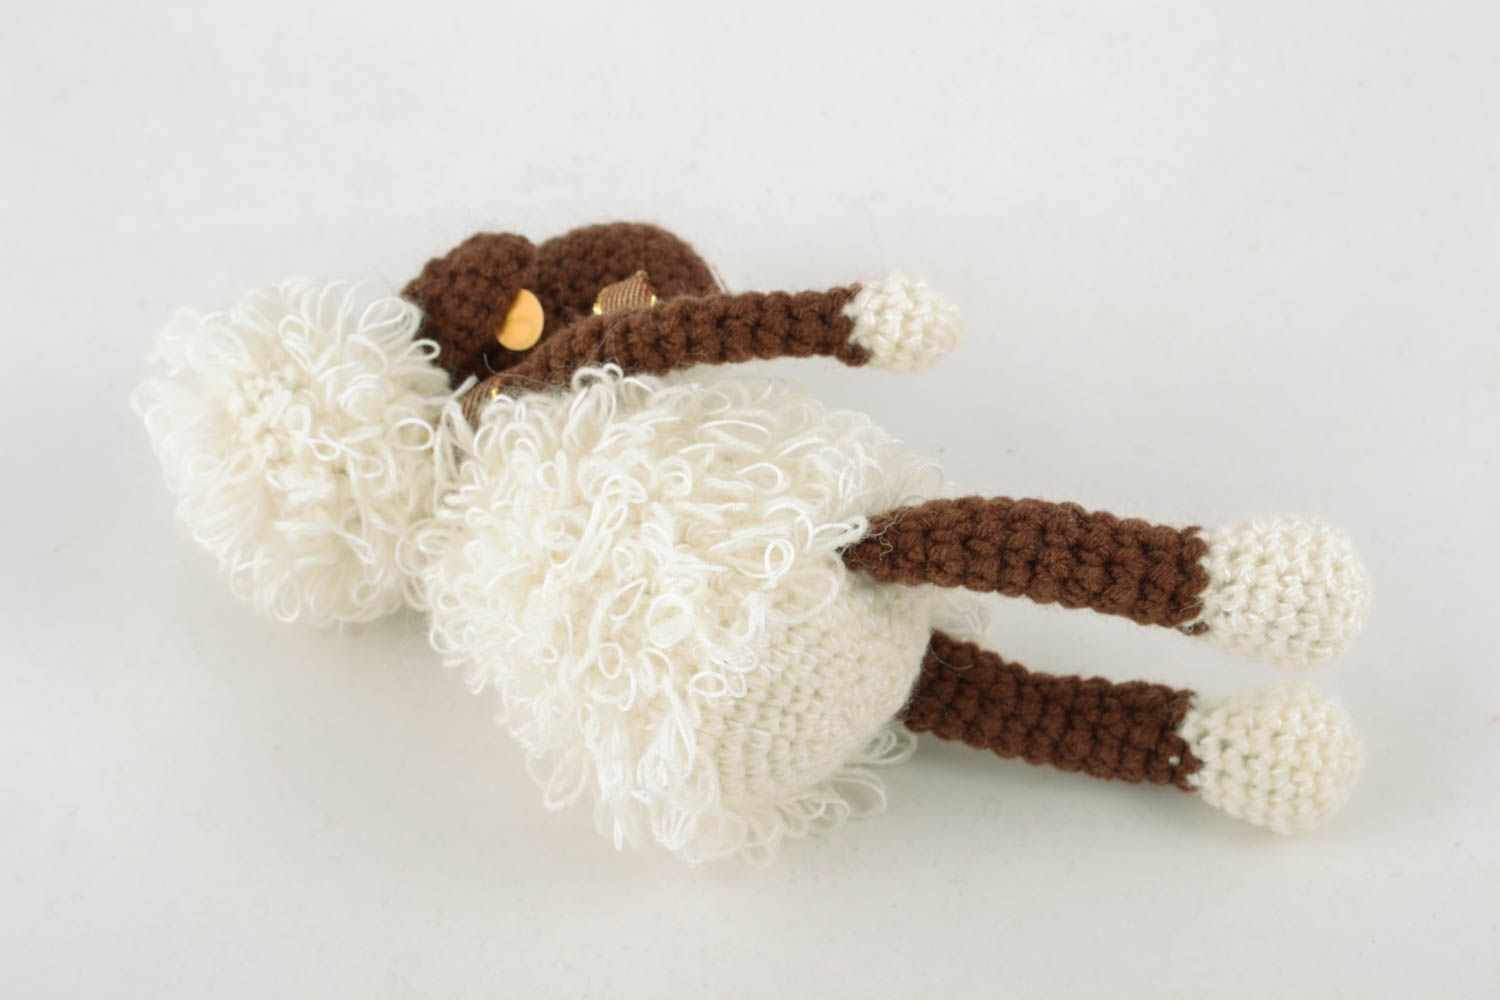 Homemade crochet toy Cheerful Lamb photo 3